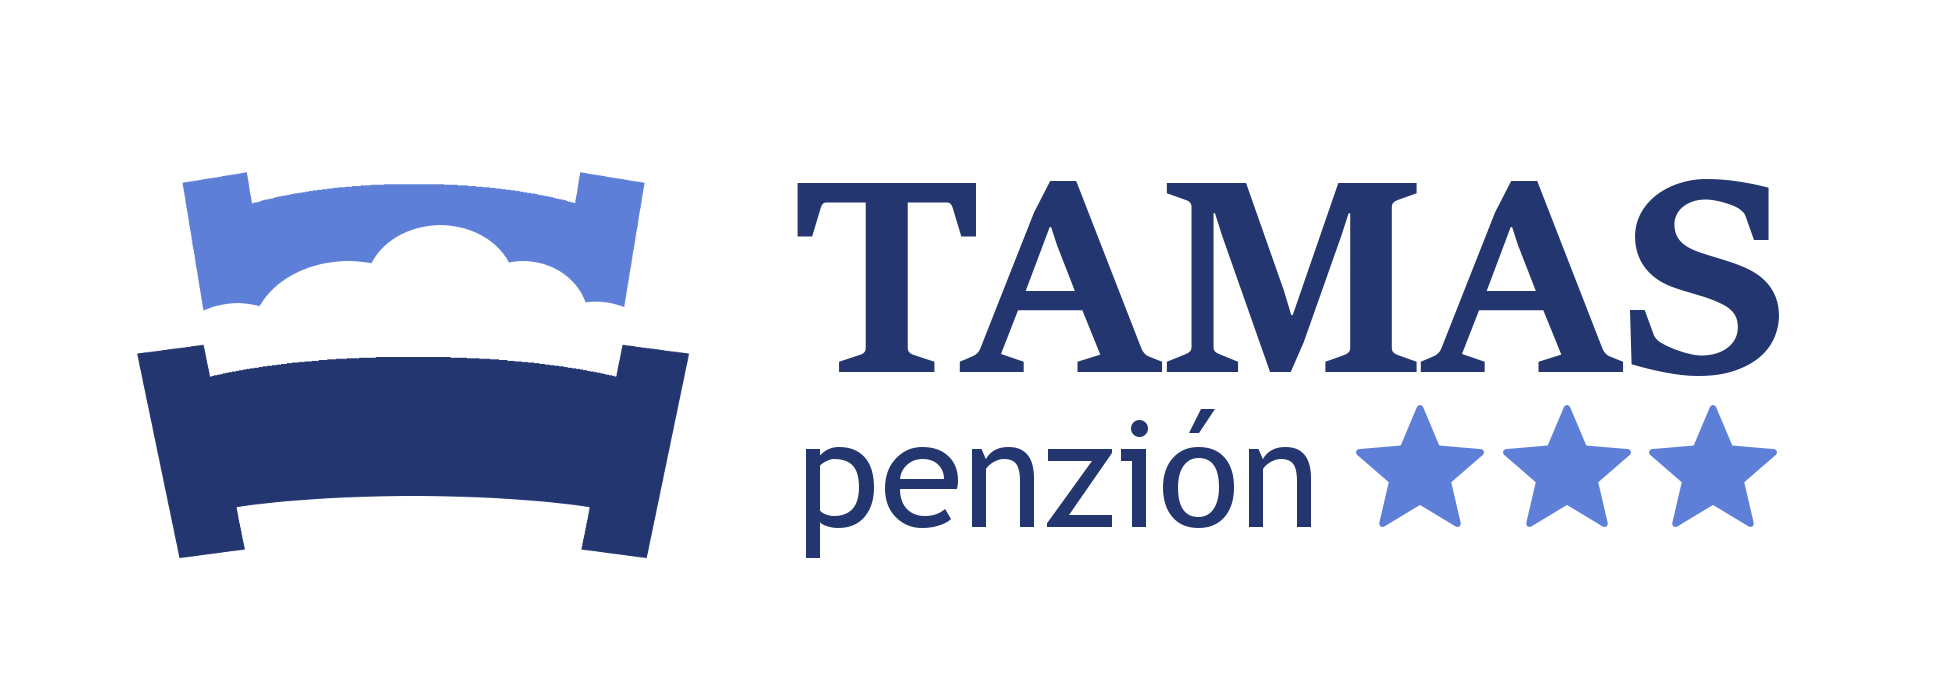 tamas-nezion-logo